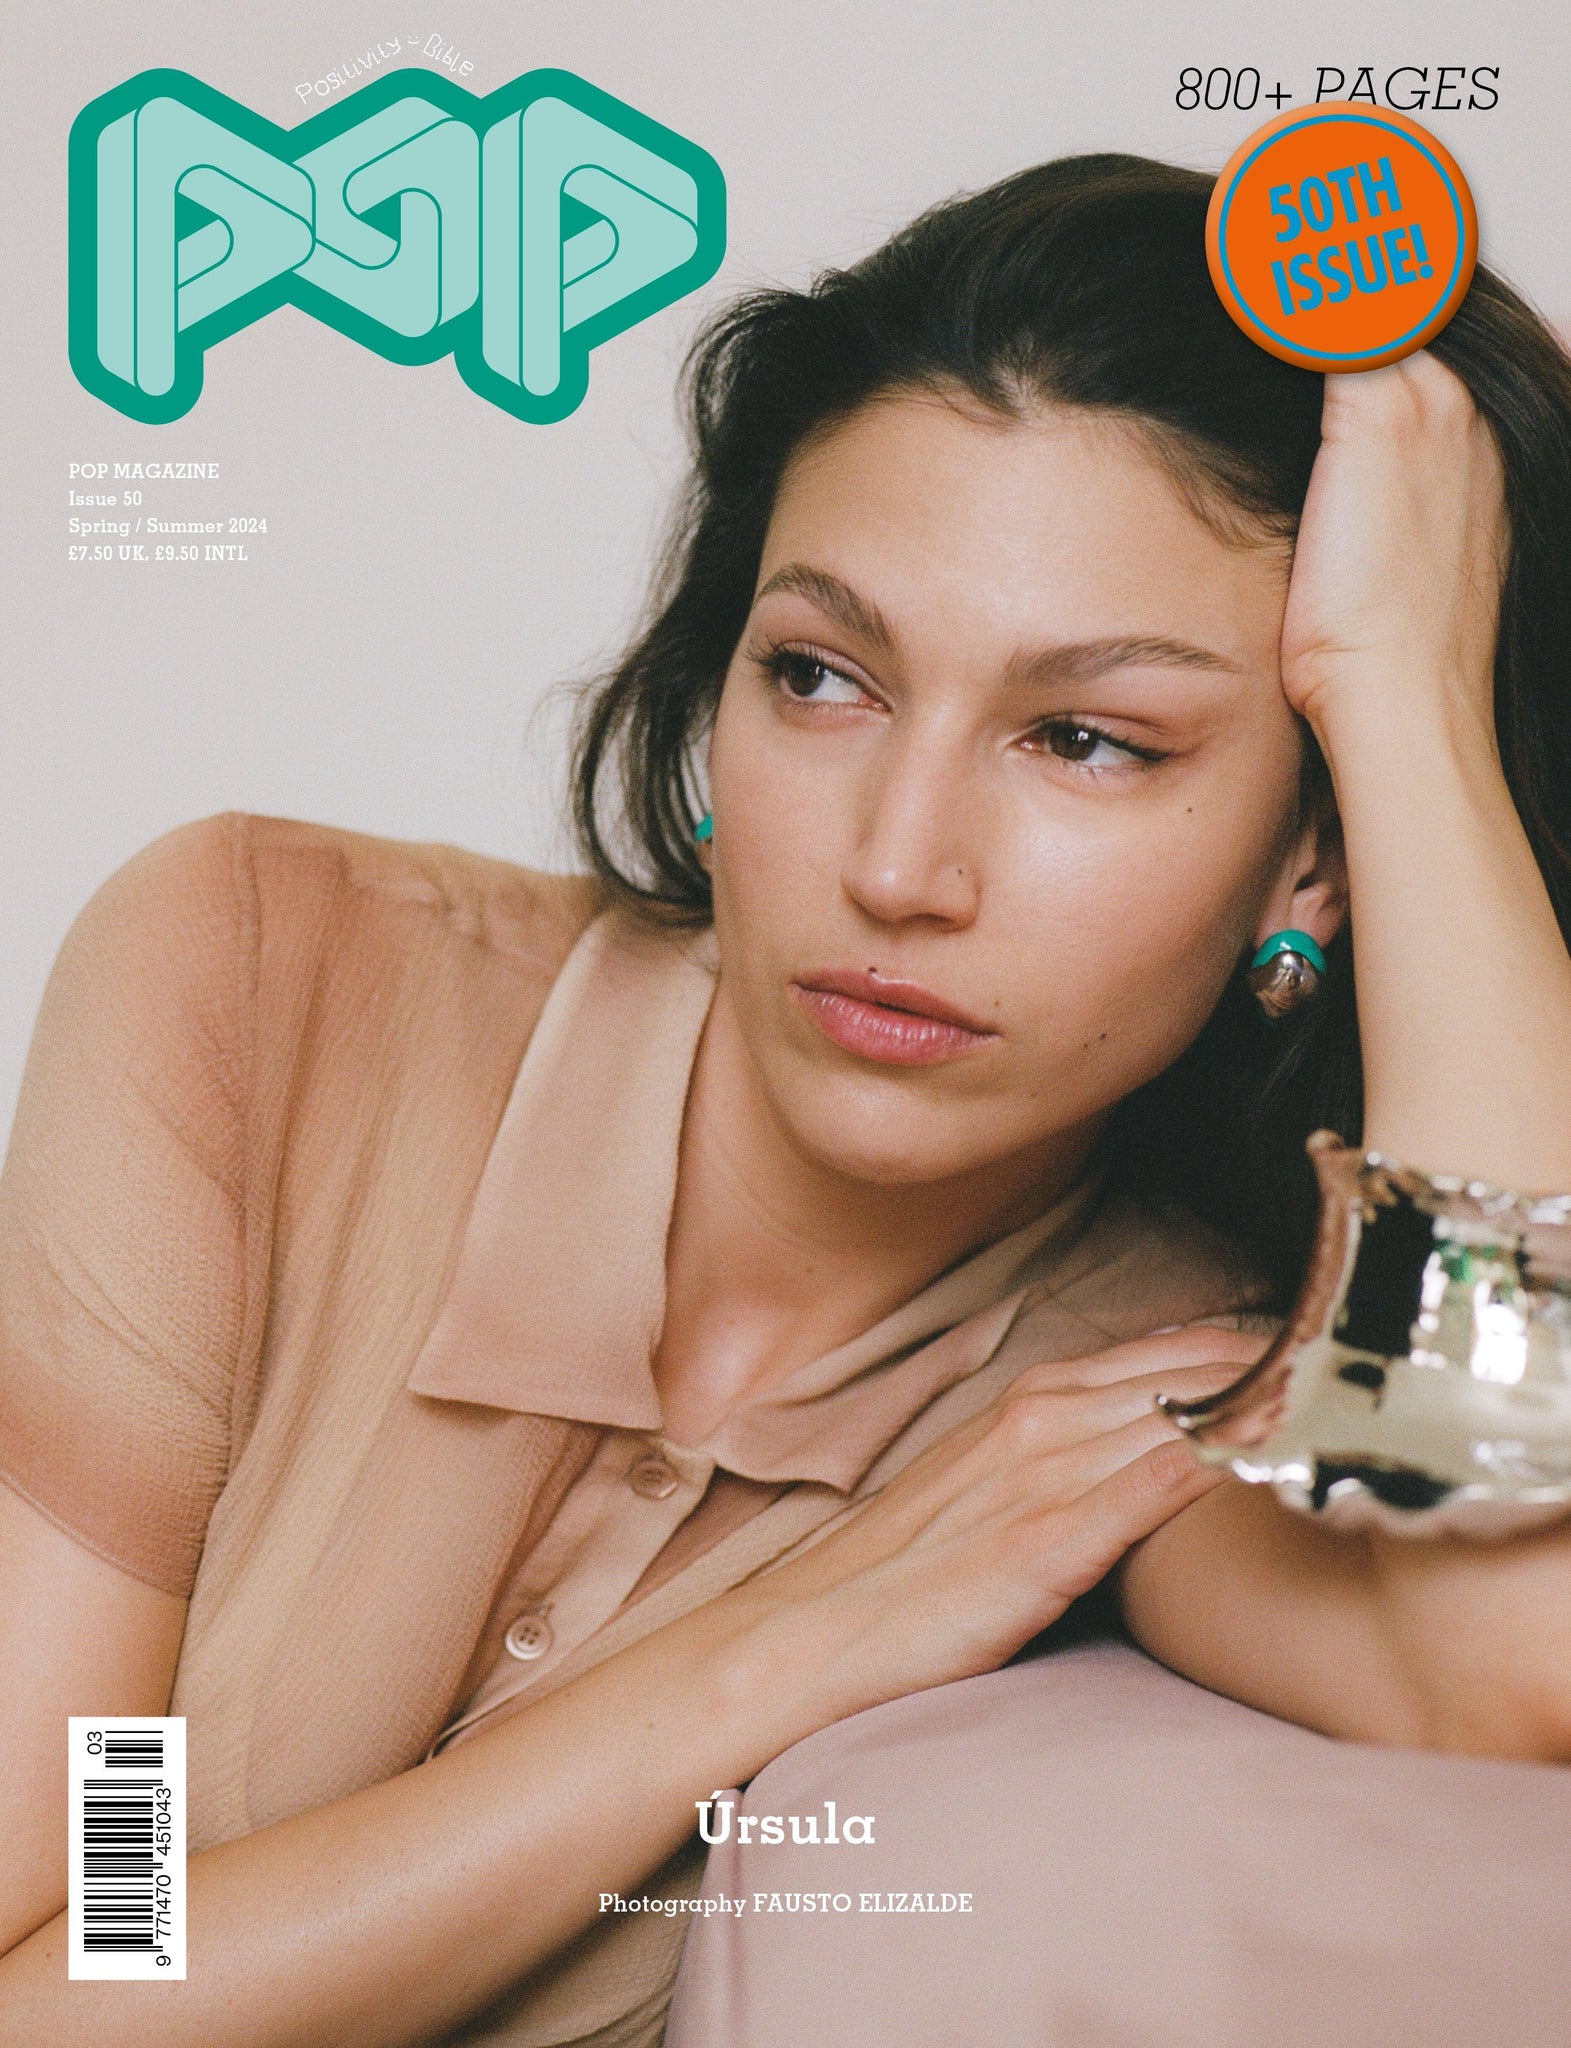 Revista POP Magazine Issue 50 - ECRU